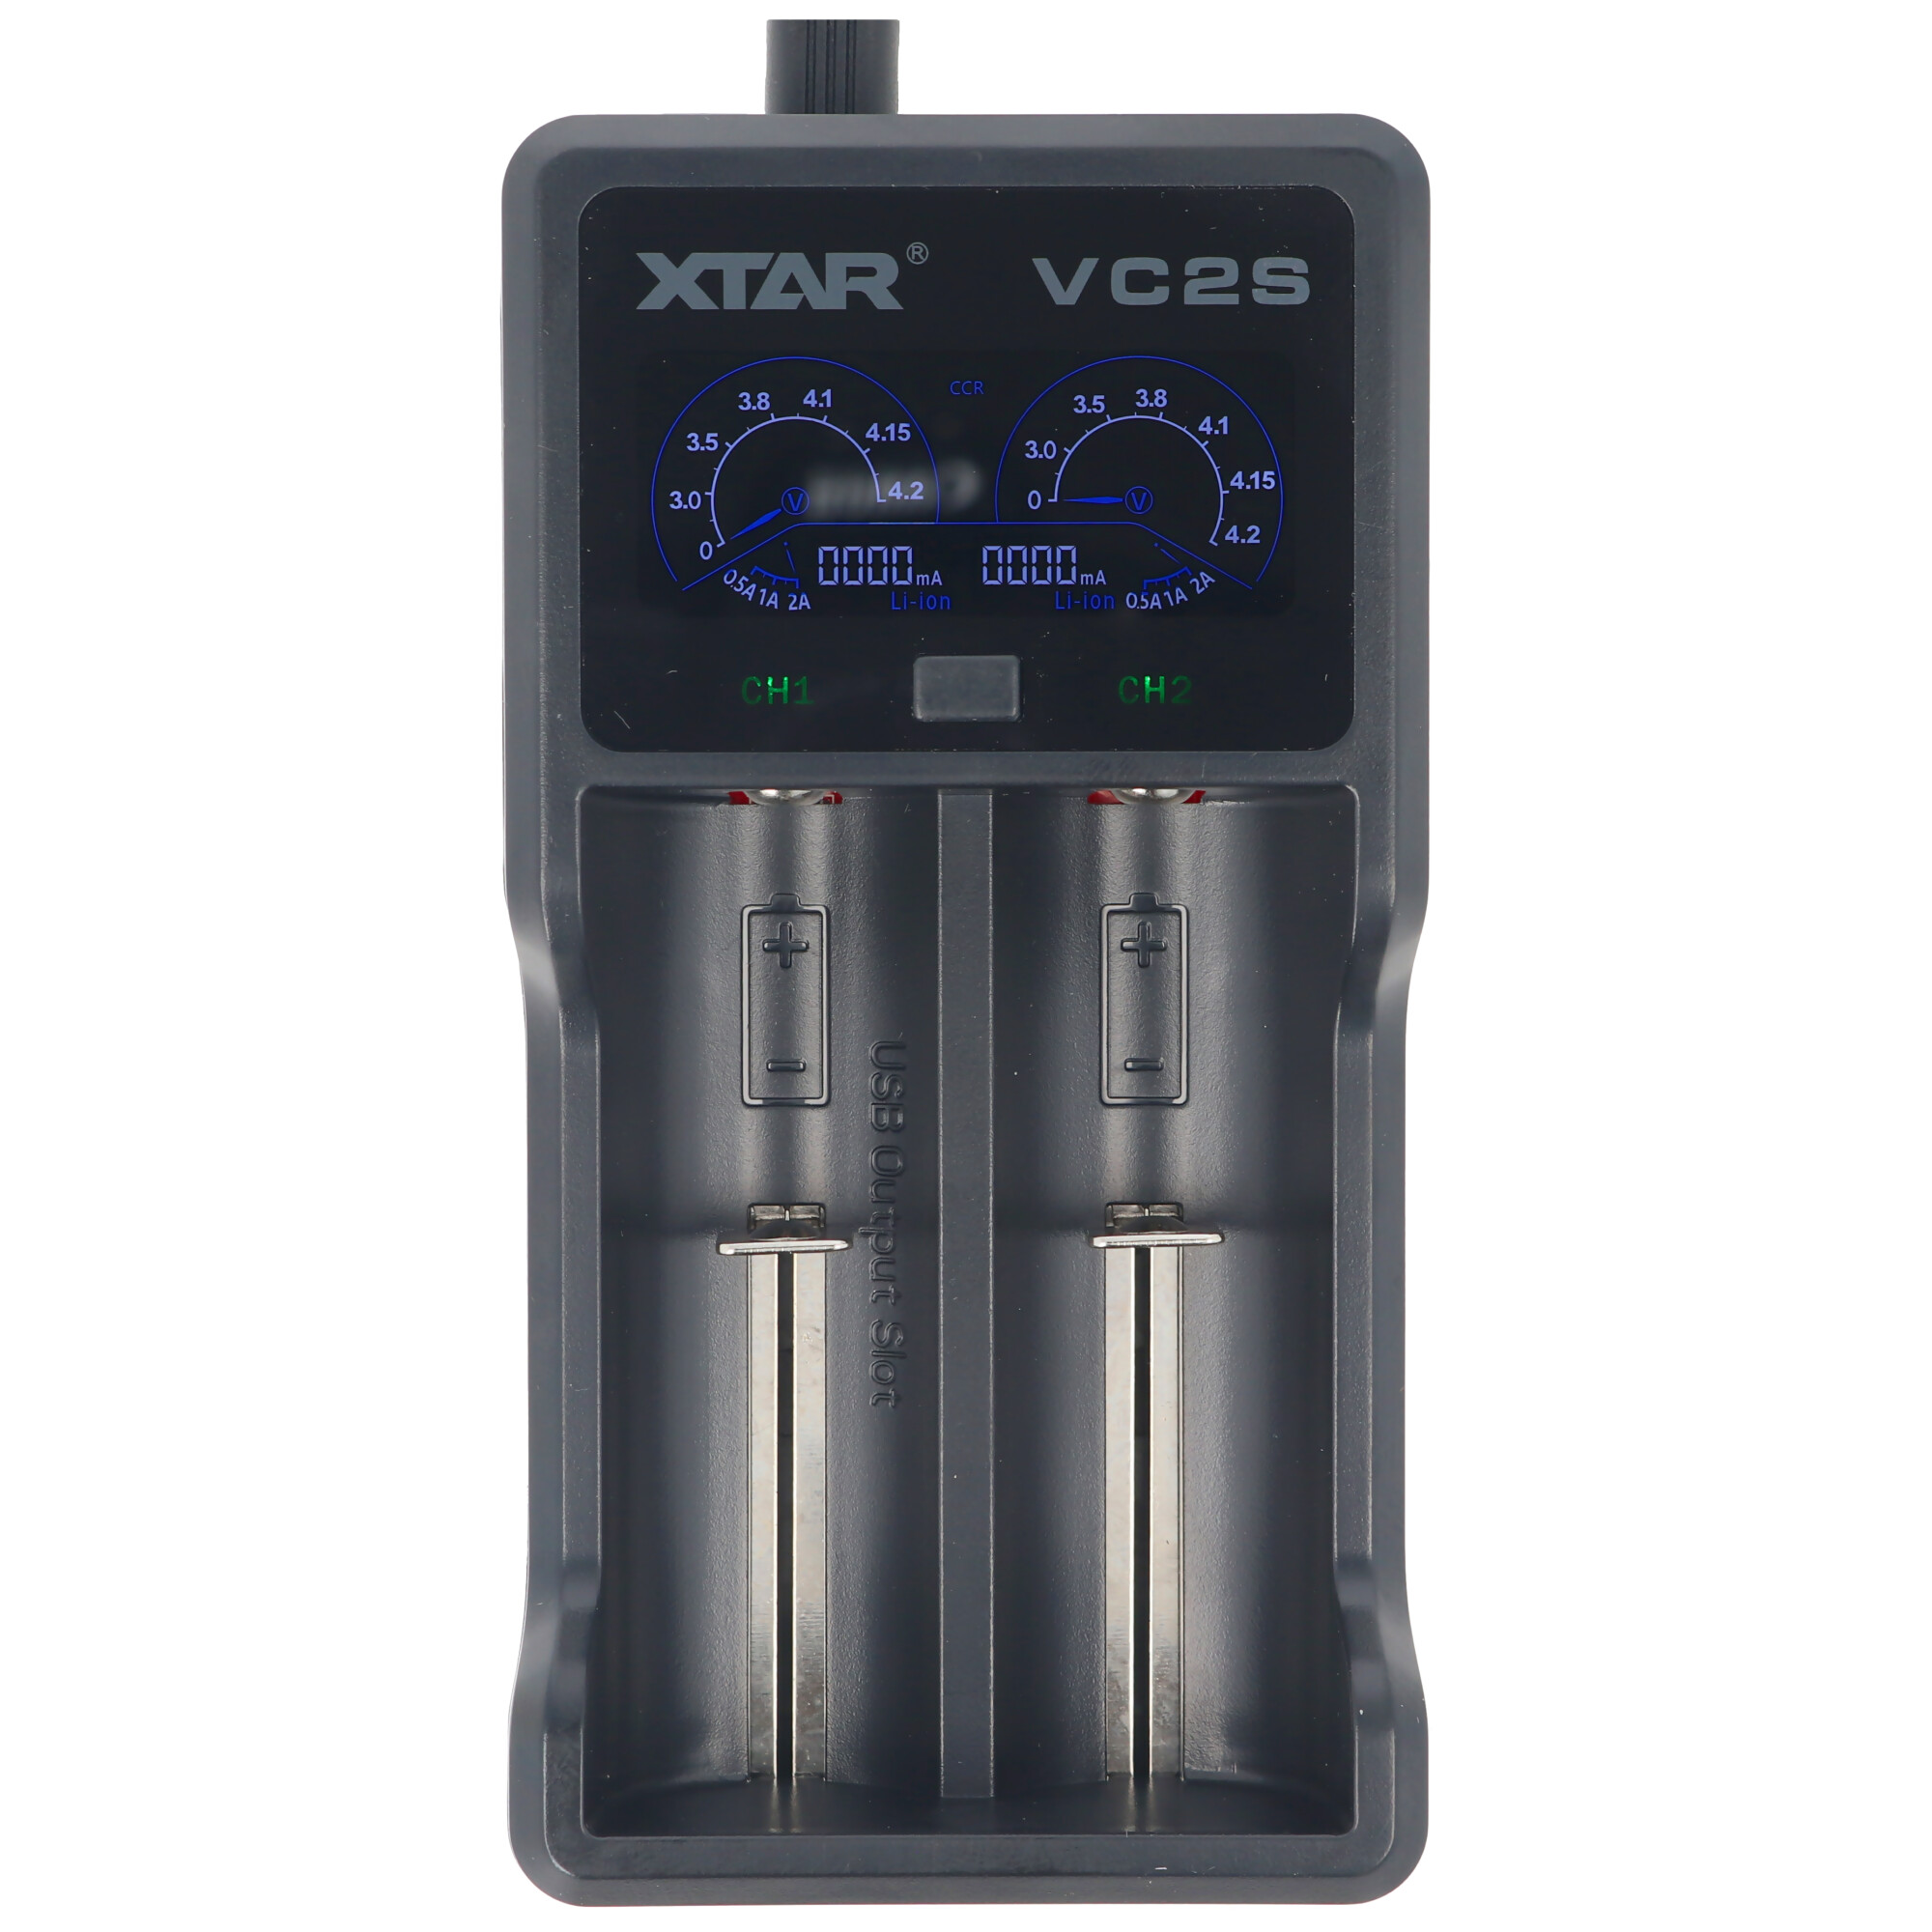 Xtar VC2S - Ladegerät für Li-Ion und NIMH Akku inklusive USB-Kabel